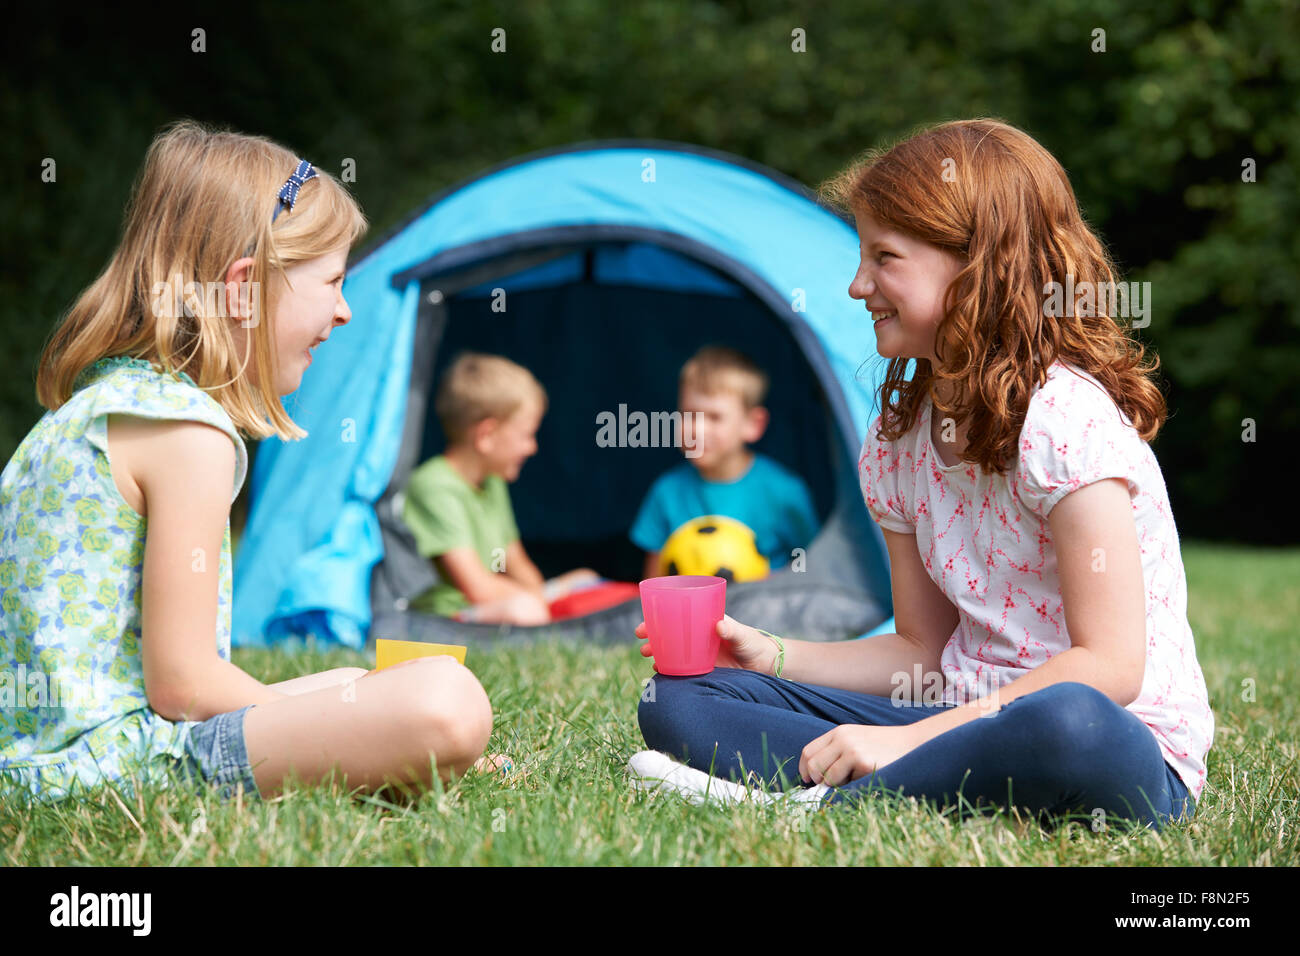 Zwei Mädchen im Chat zusammen auf Camping-Ausflug Stockfoto